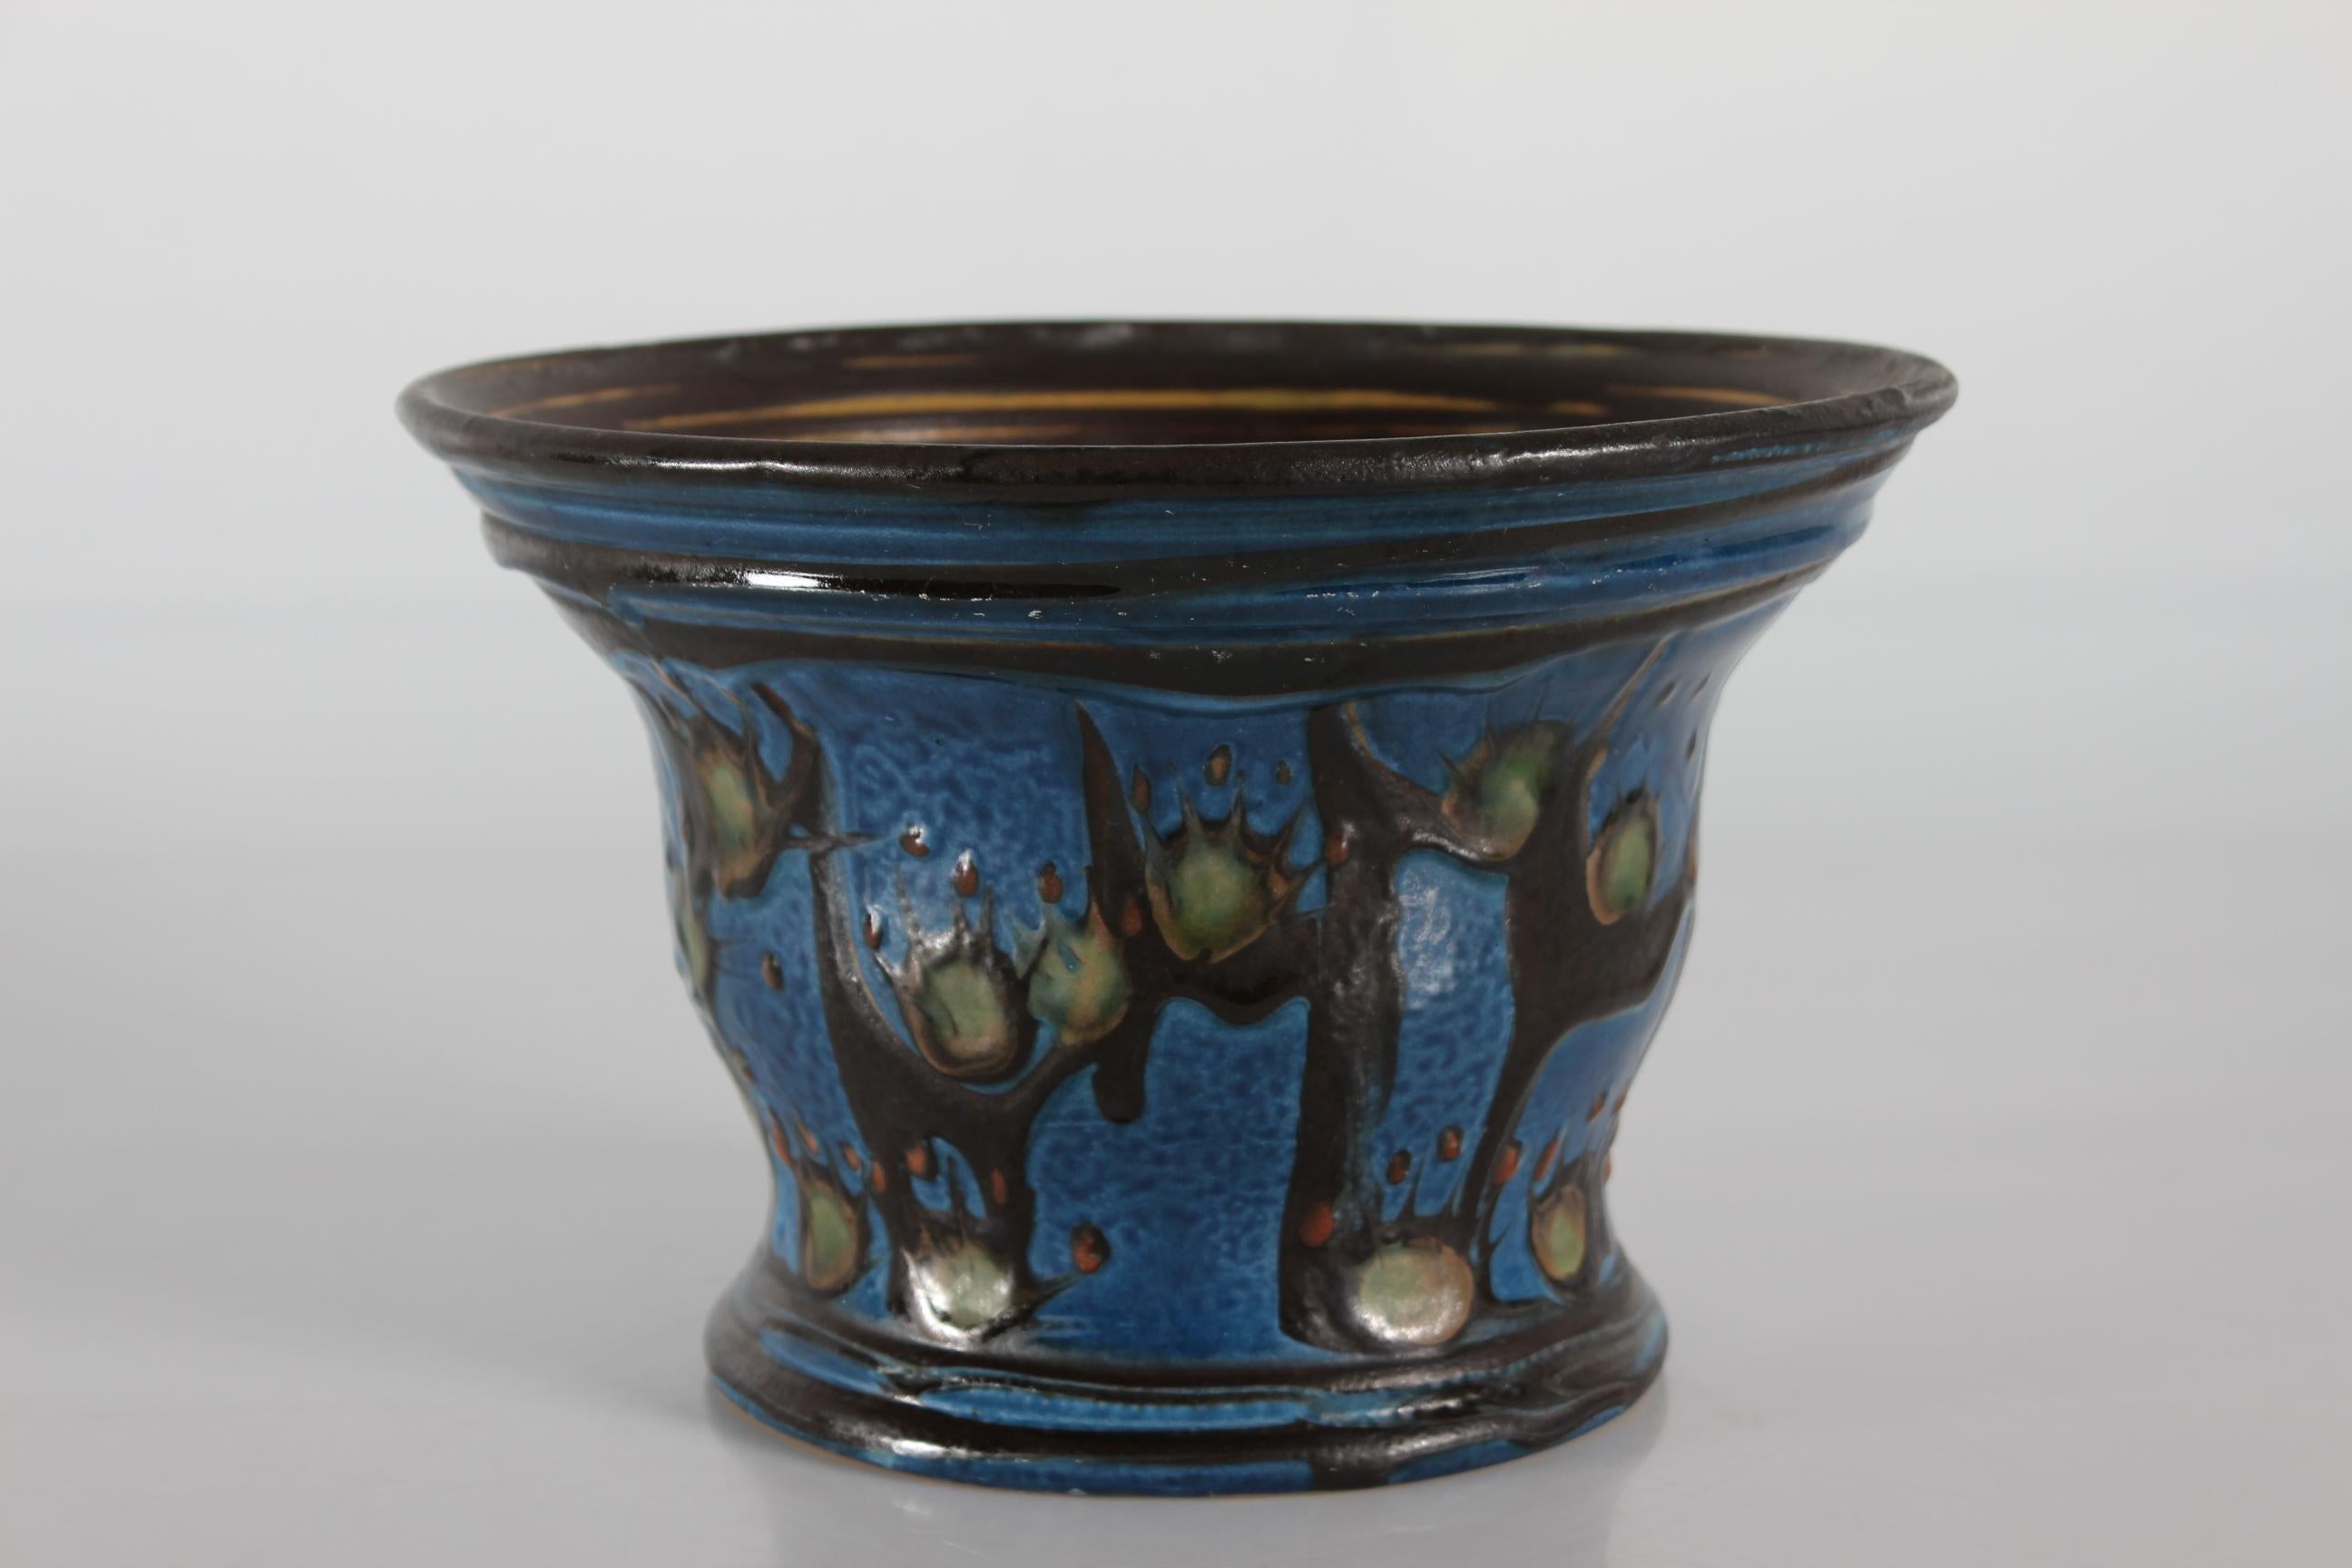 Jugendstil-Blumentopf aus Keramik, hergestellt von Herman A. Kähler Keramikwerke in Dänemark im Zeitraum 1925-1935
Der Blumentopf wird von Hand mit der speziellen Kuhhorn-Technik verziert. Die Glasur ist dunkelblau, rostbraun, grün und